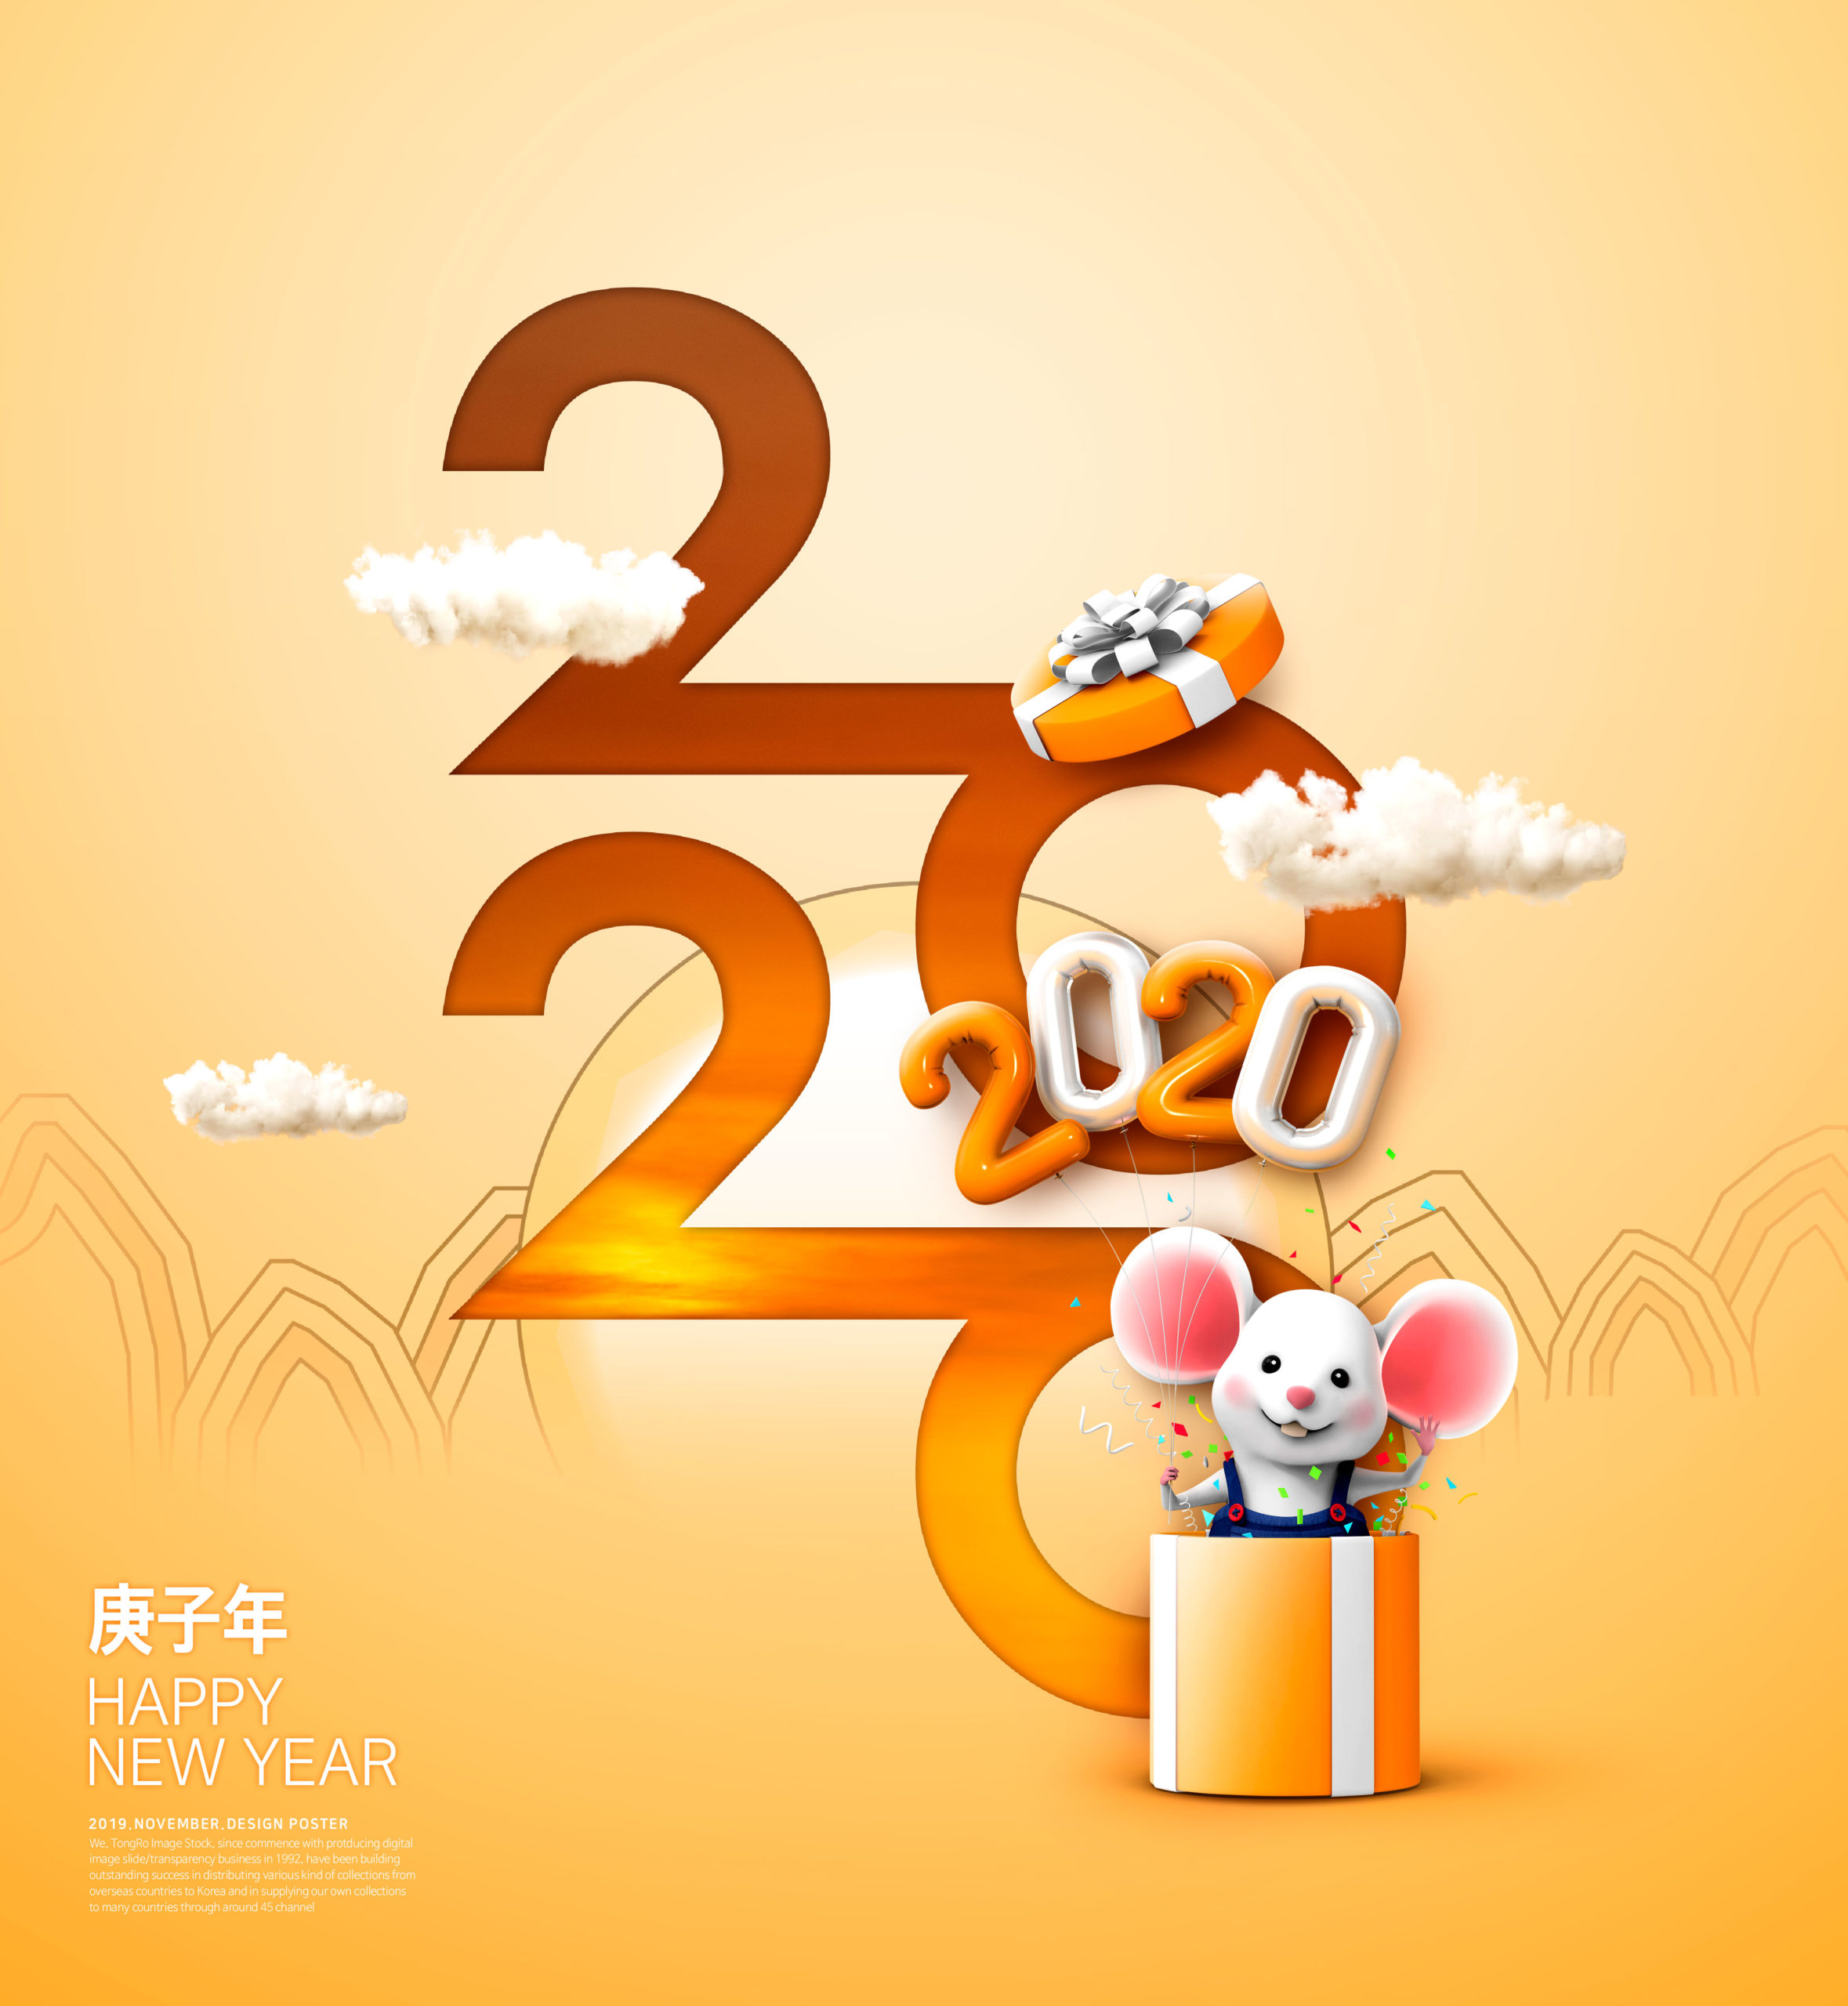 可爱小老鼠2020鼠年/庚子年/新年快乐主题海报模板[PSD]插图(5)